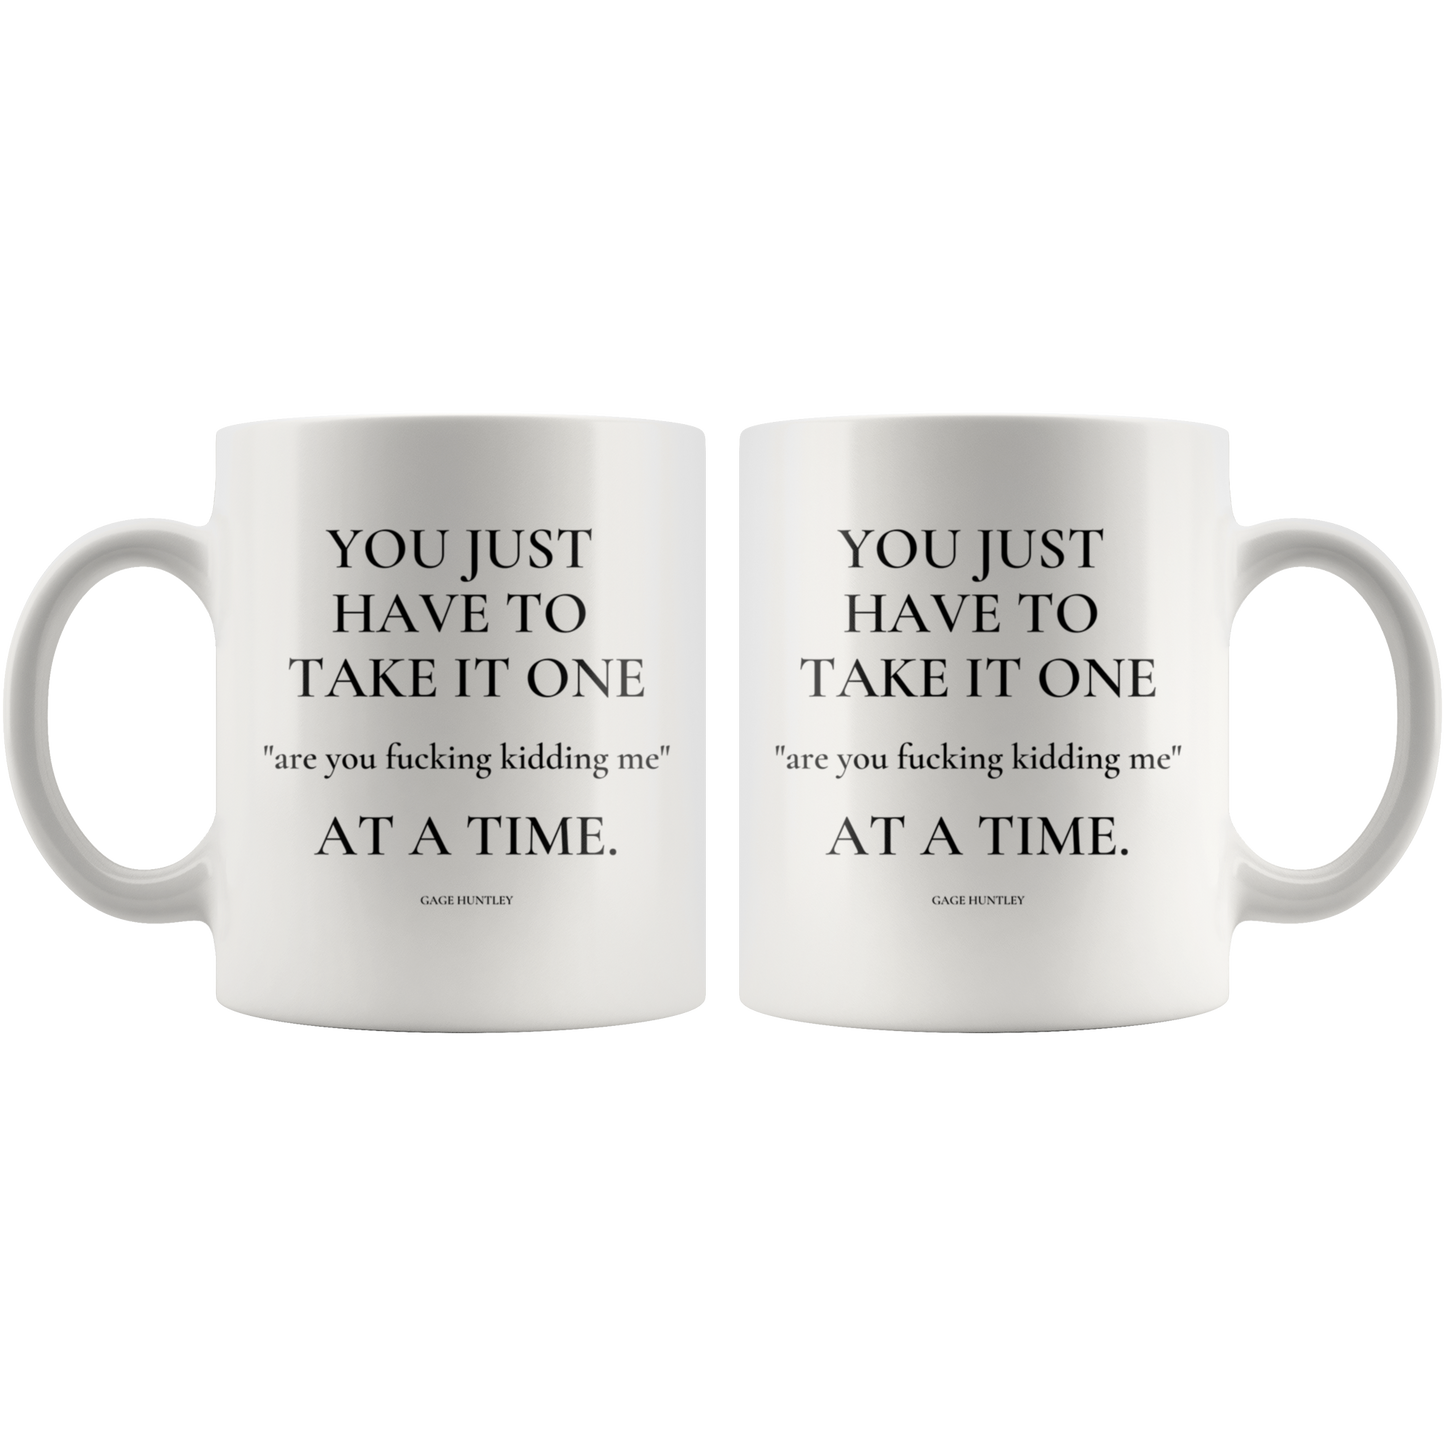 Are You Kidding Me- Coffee Mug